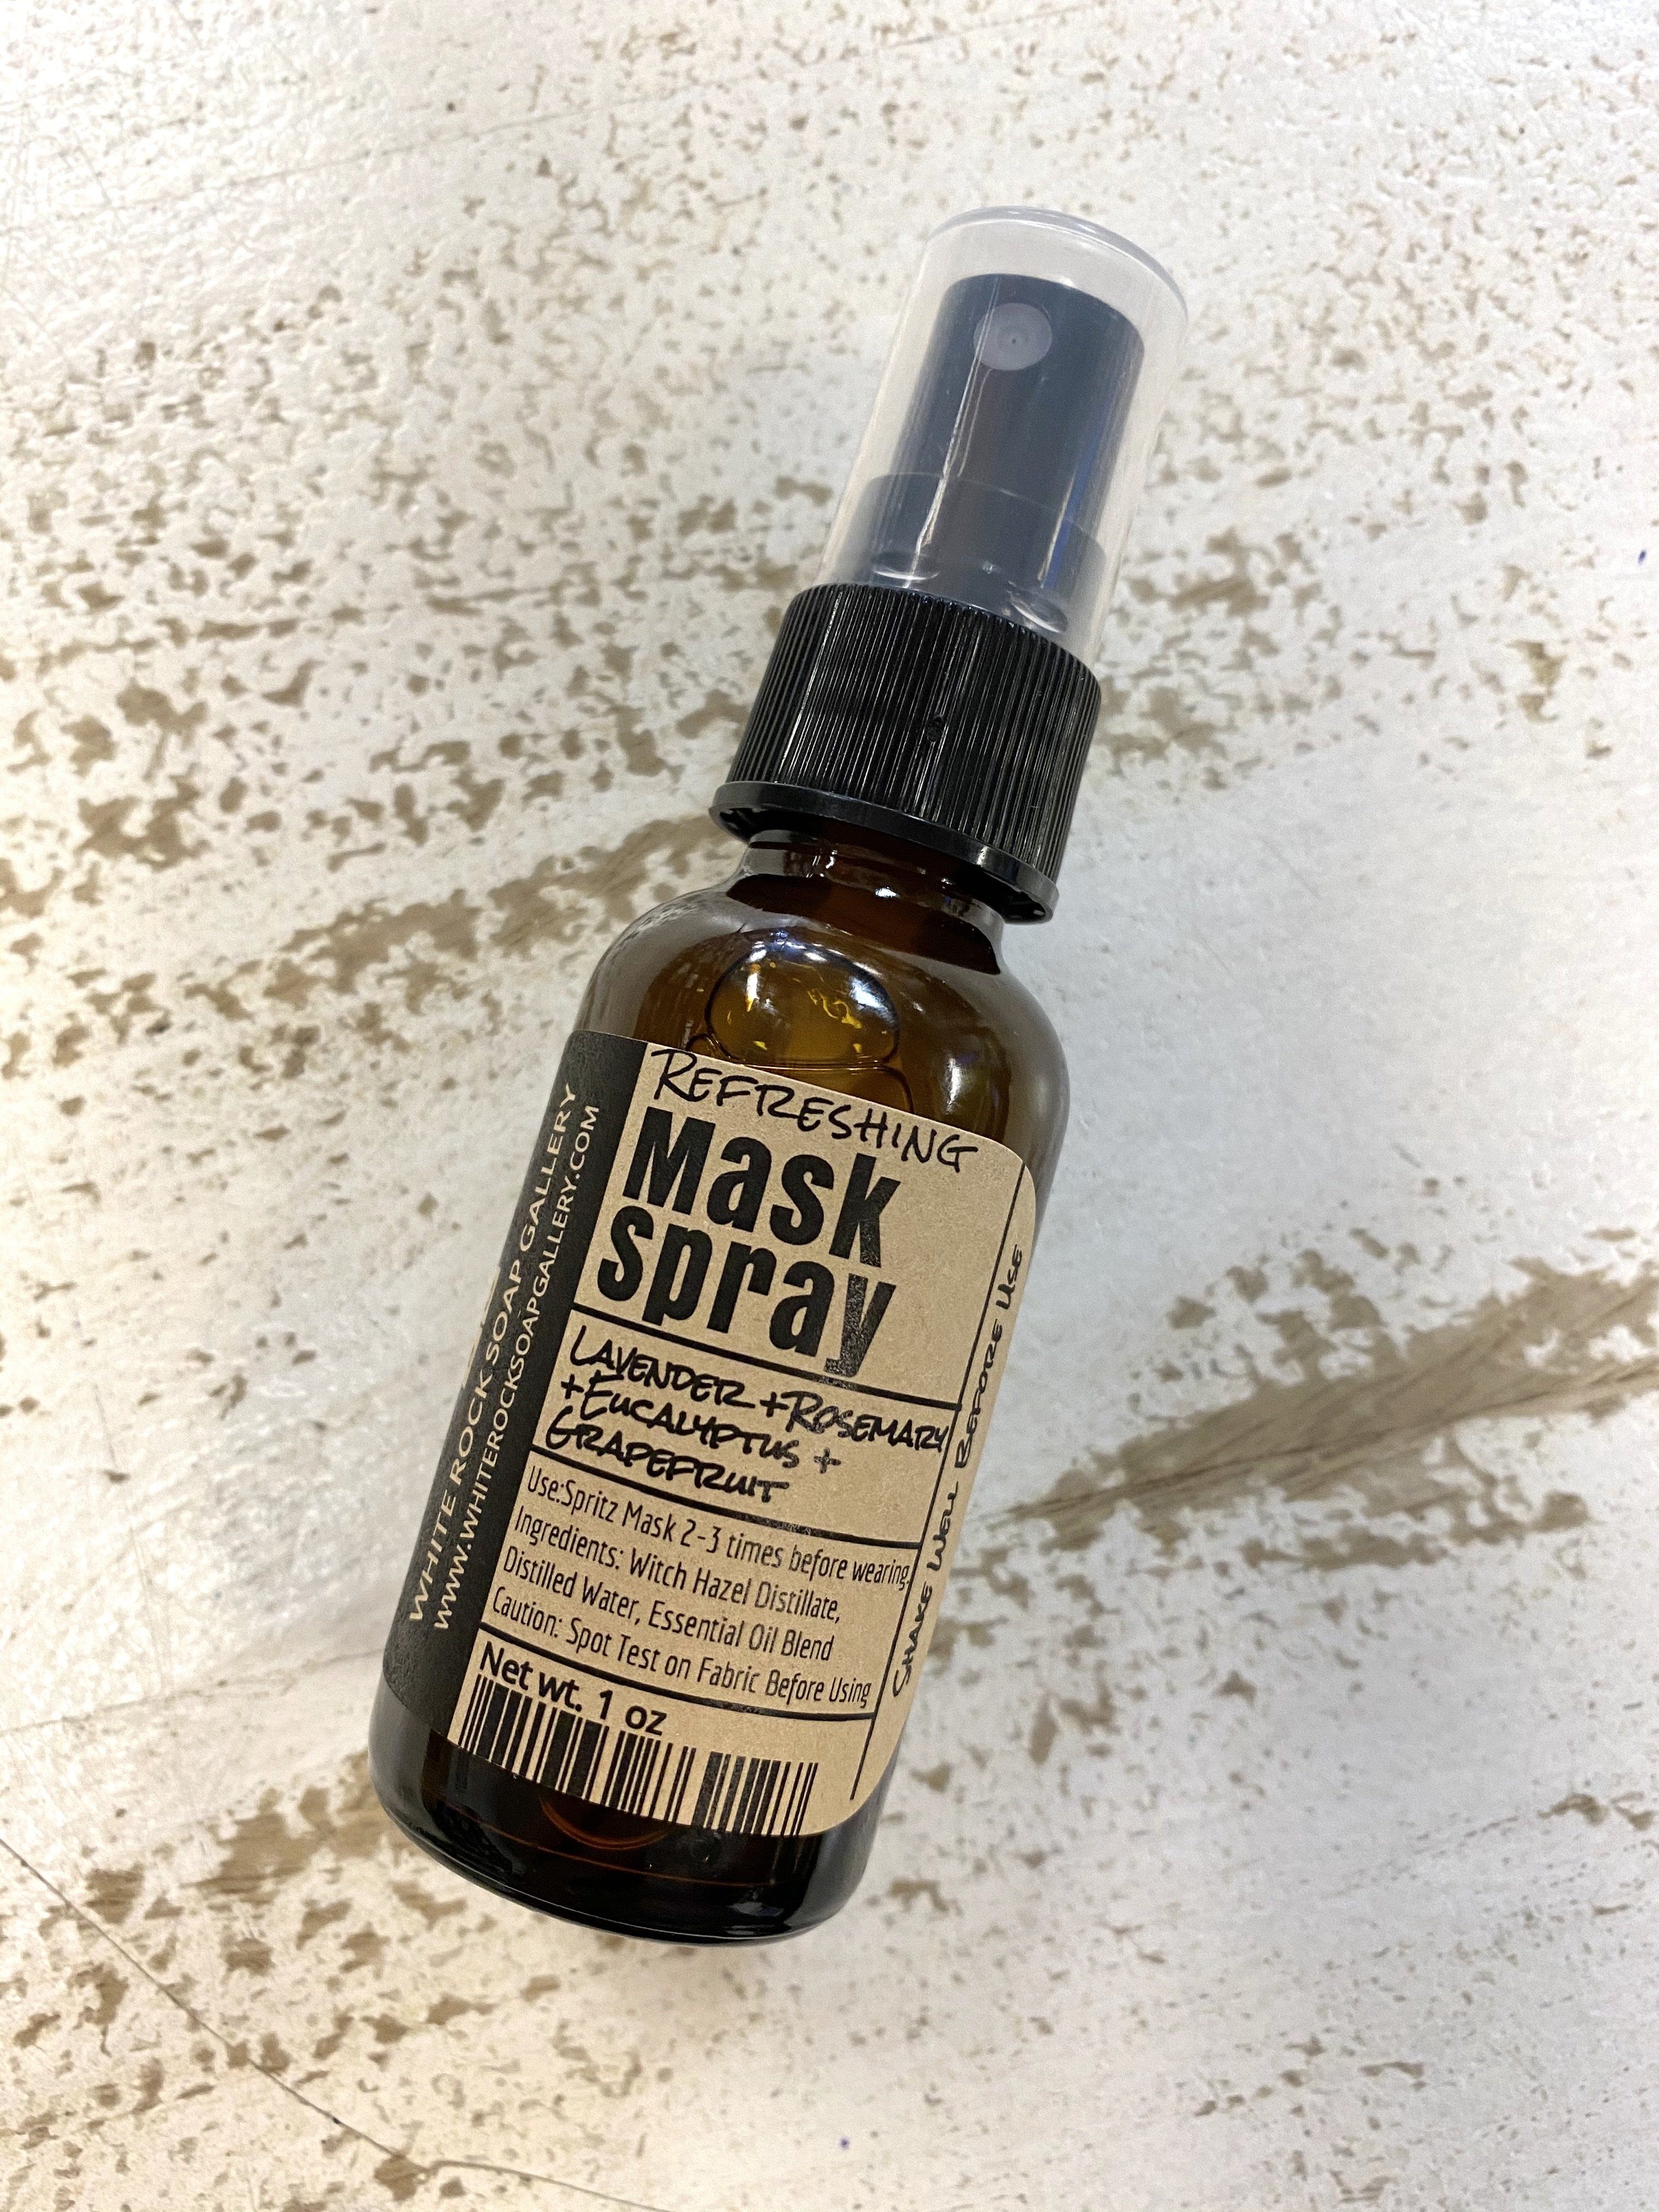 Refreshing Mask Spray  - Travel Size